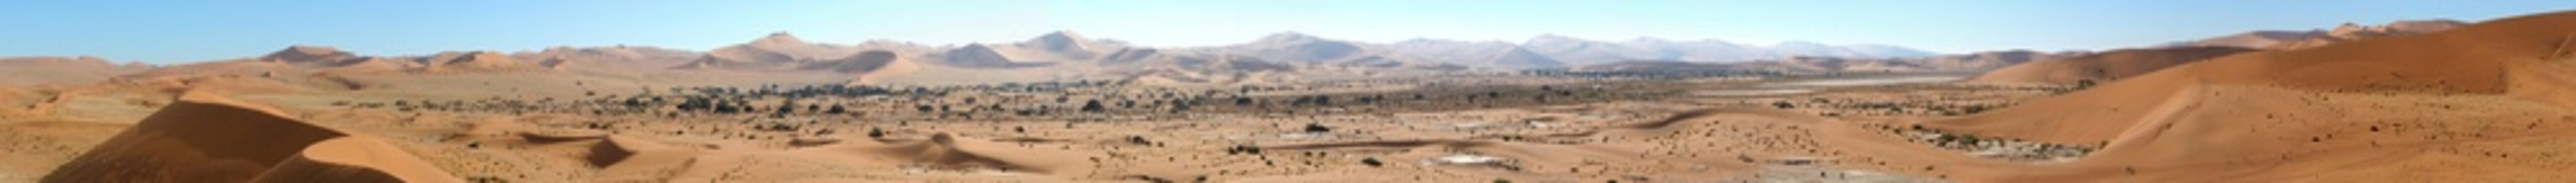 Sossusvlei panorama 1